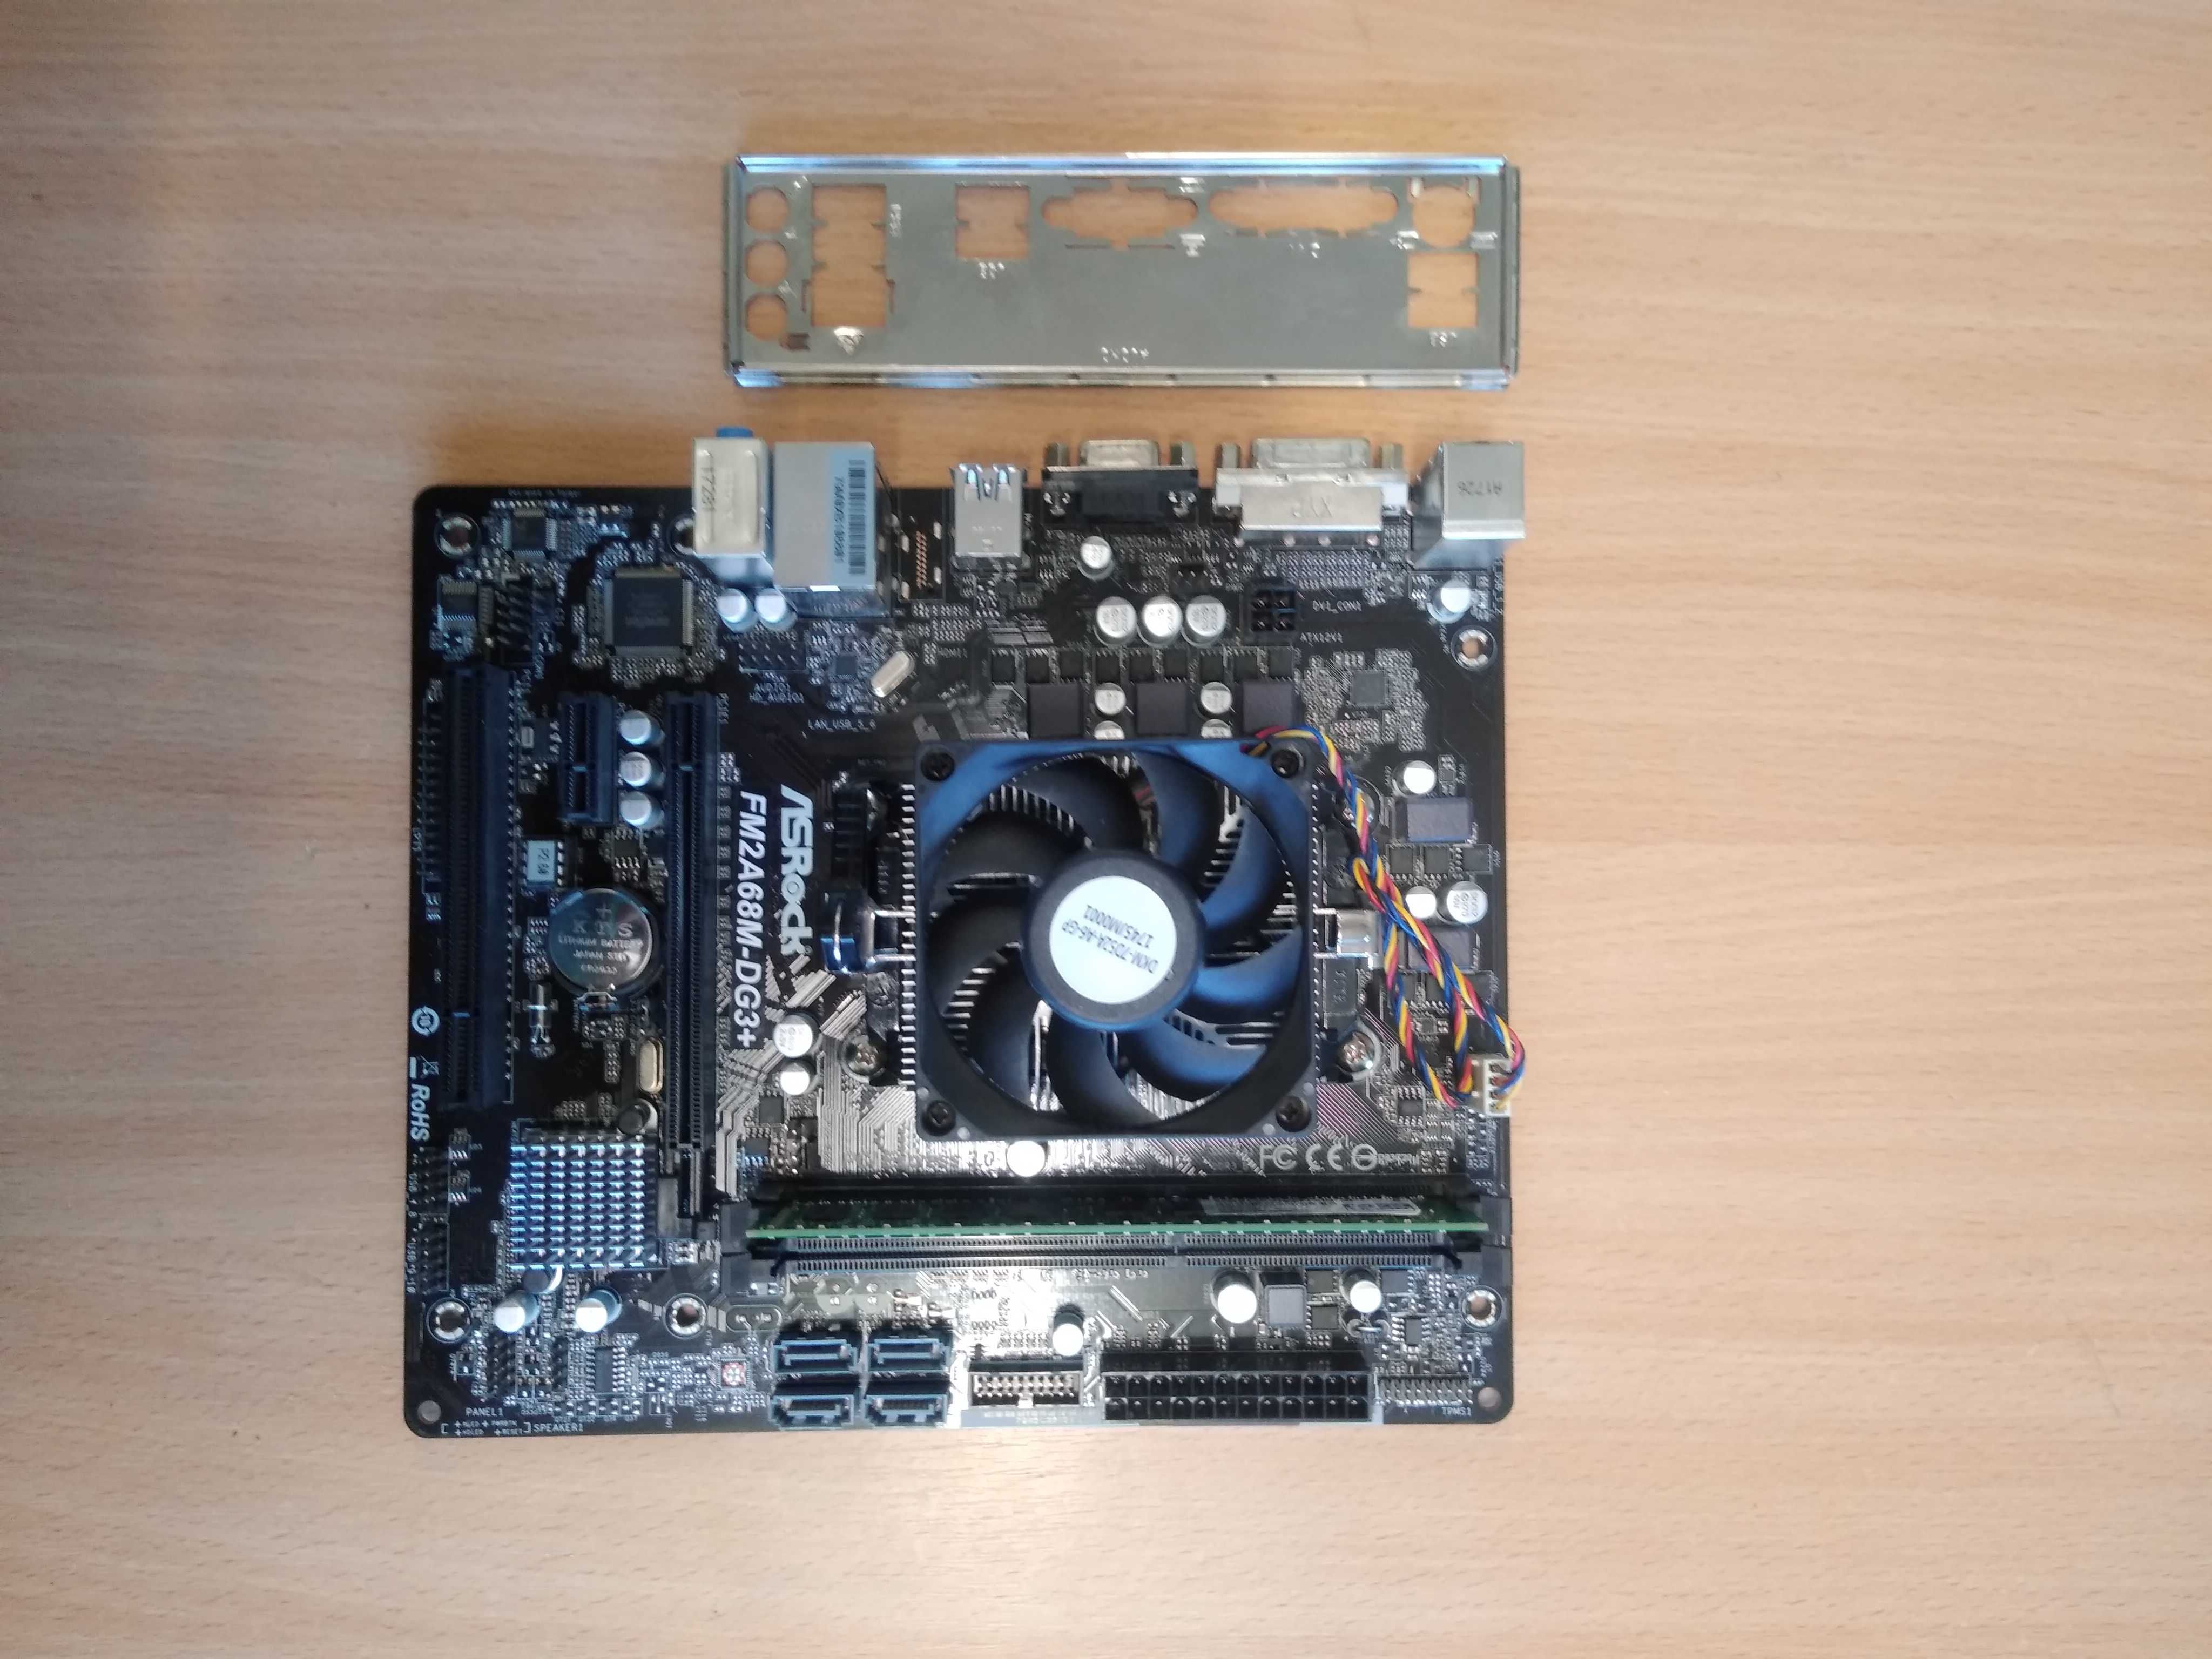 Комплект ASRock FM2A68M-DG3+  + проц AMD A4-5300 + память GOODRAM 8GB